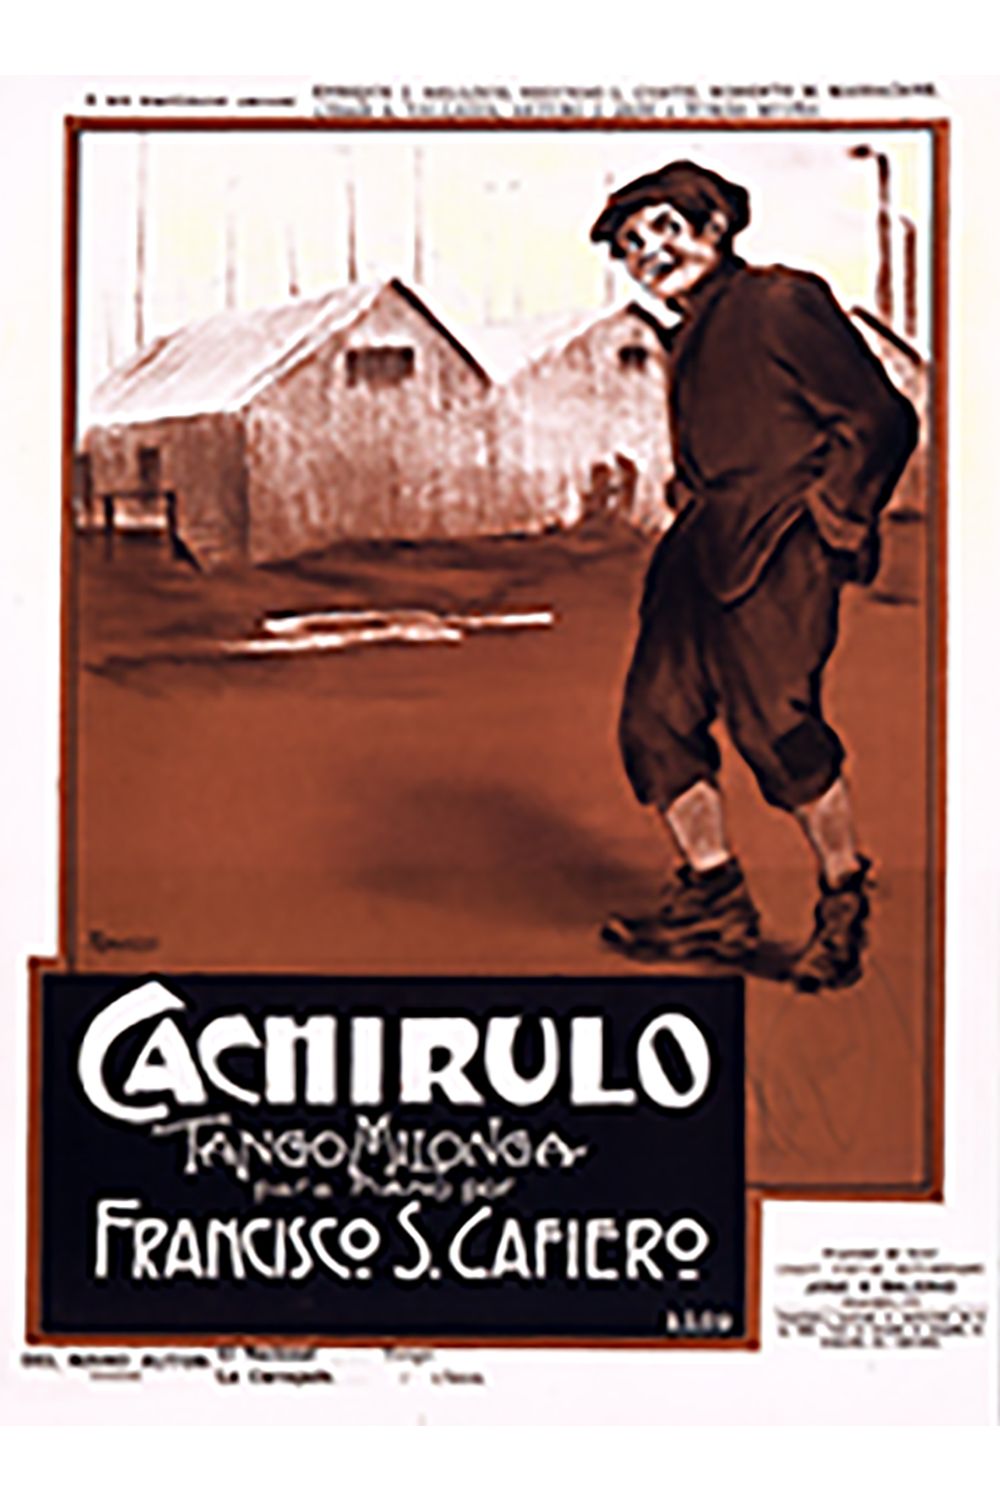 "Cachirulo", Argentine Tango music sheet.